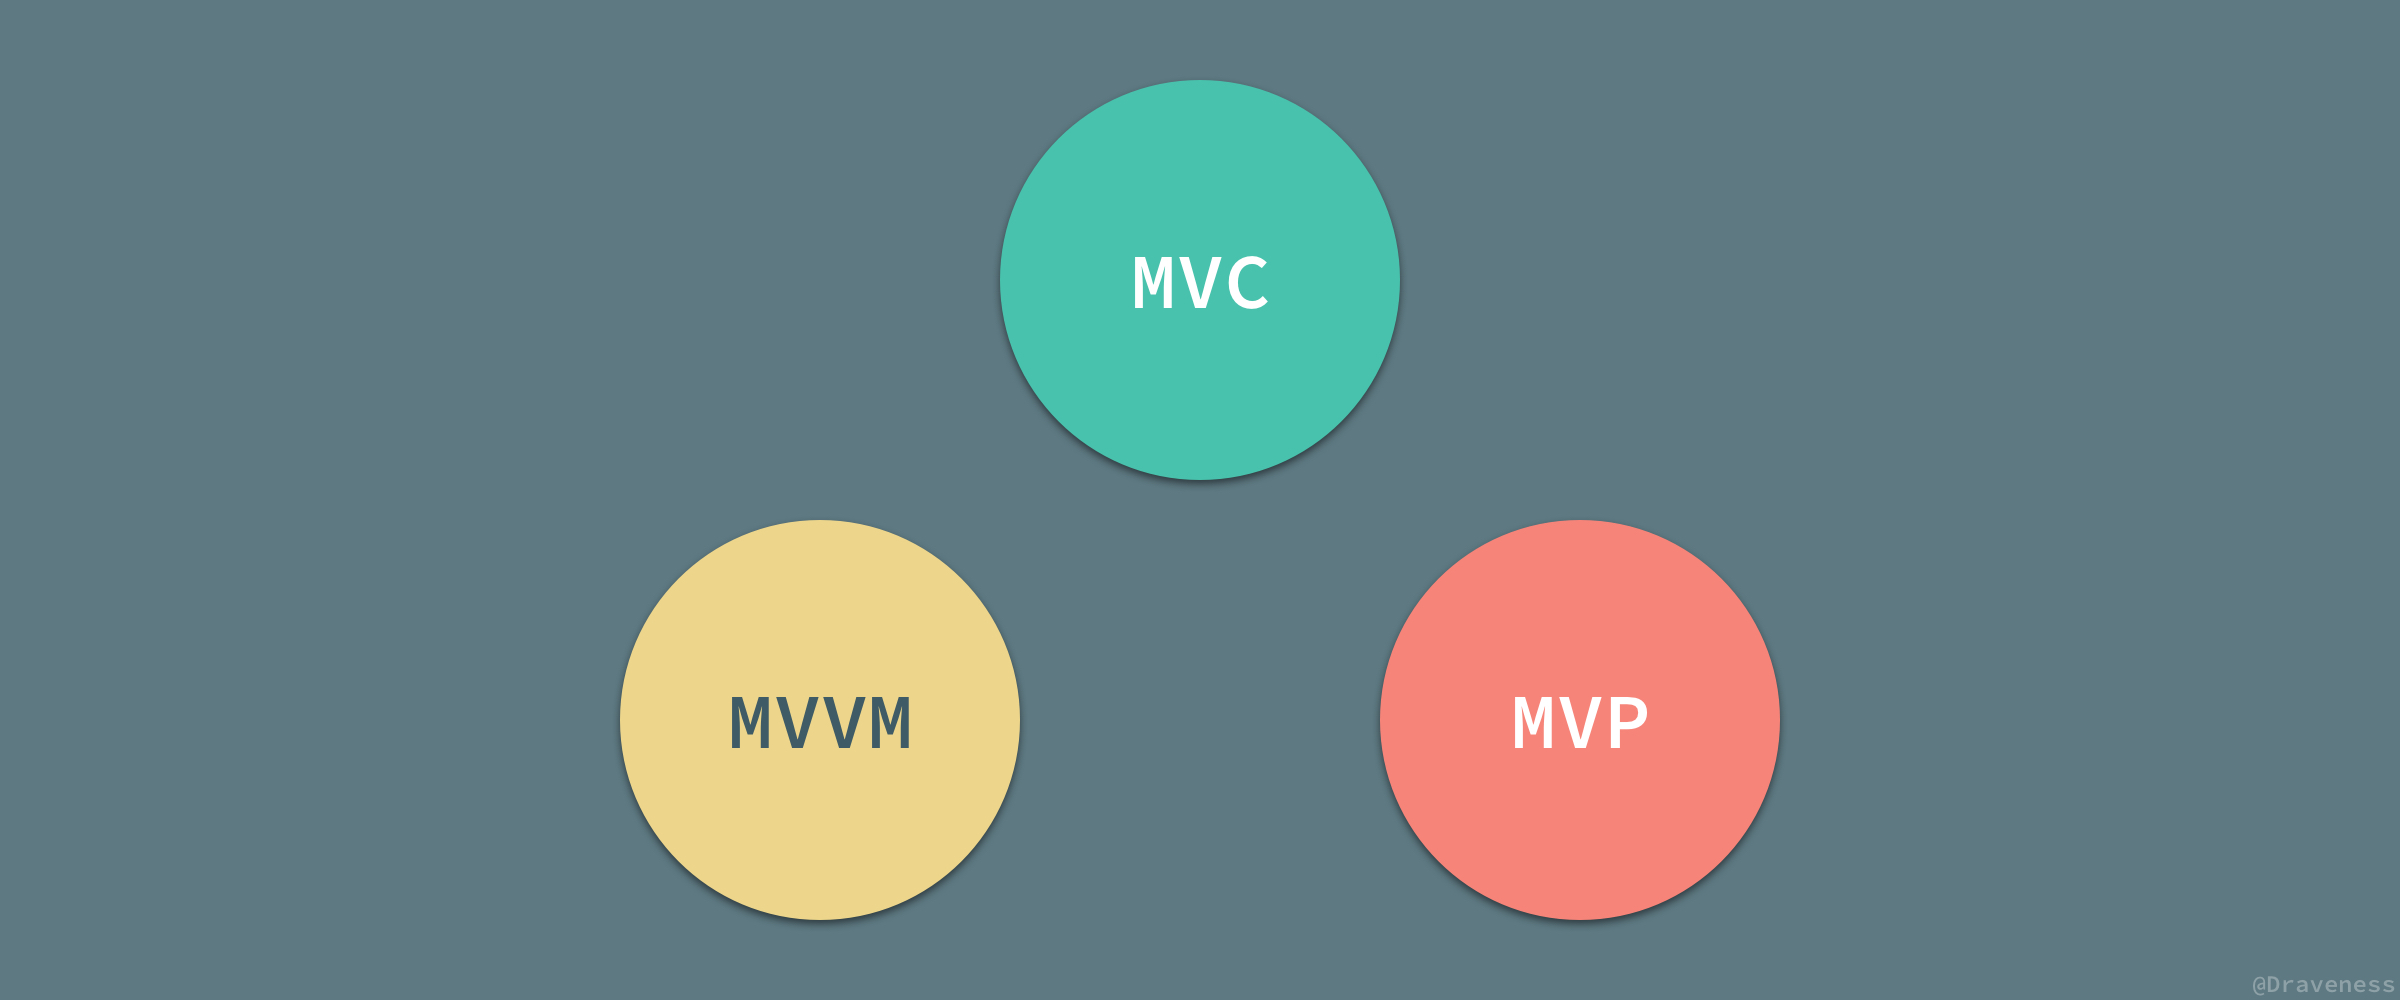 浅谈 MVC、MVP 和 MVVM 架构模式